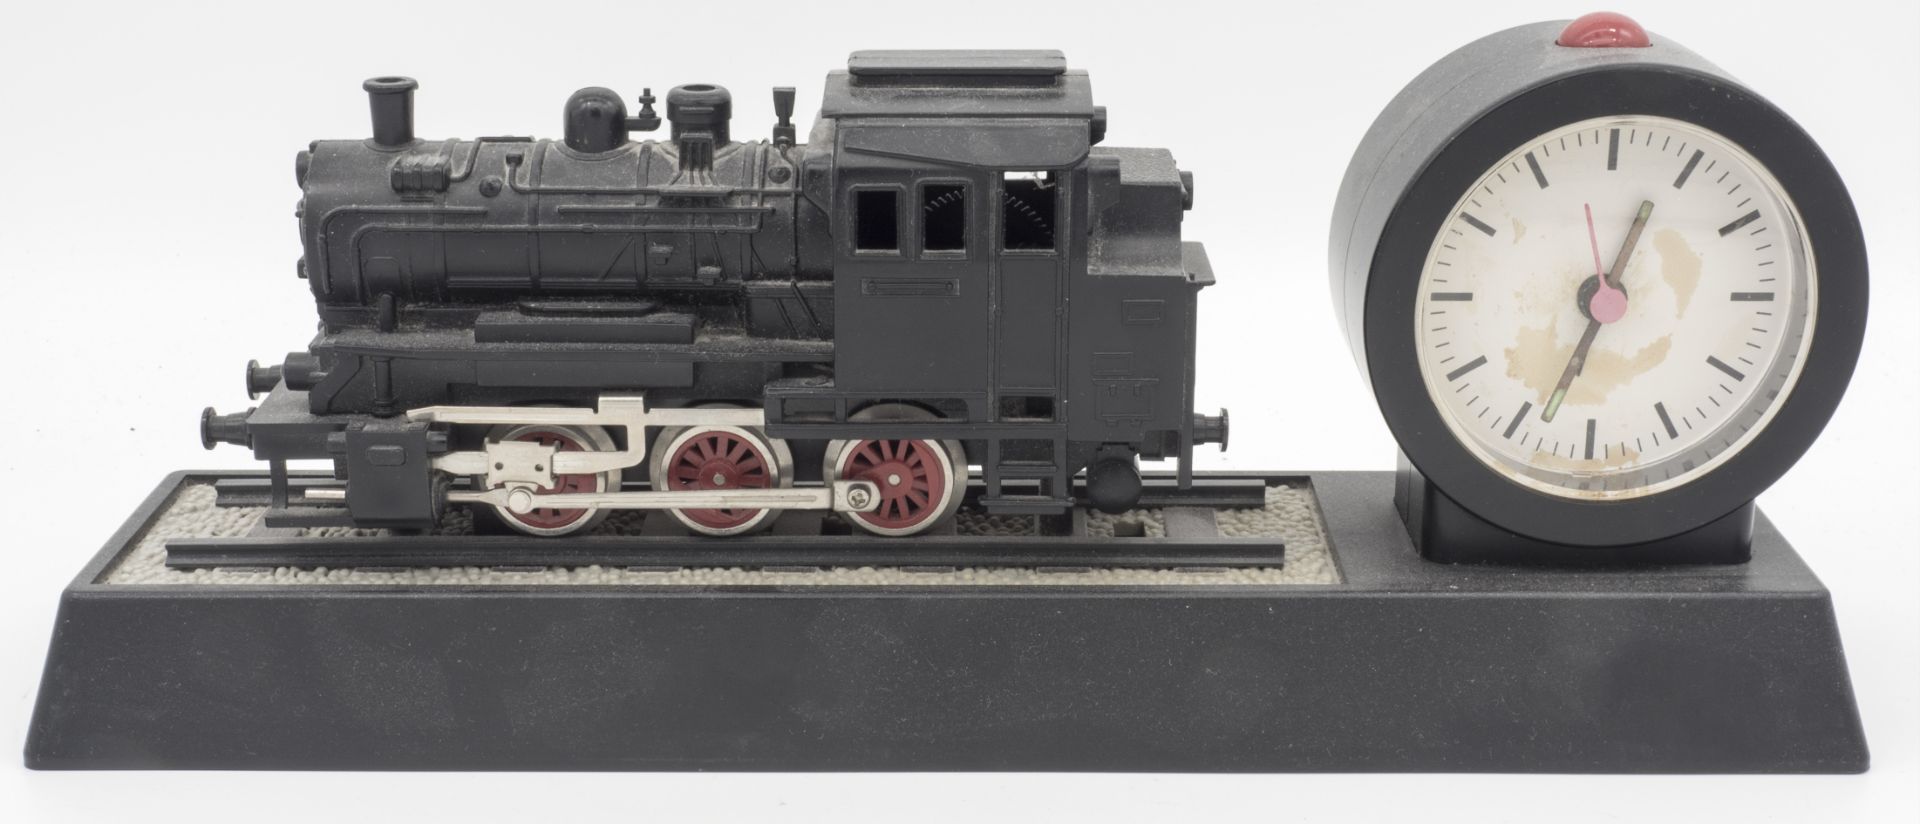 Dampflokomotive, als Standmodell mit Uhr. Für den Eisenbahn - Enthusiasten. Spur 0.